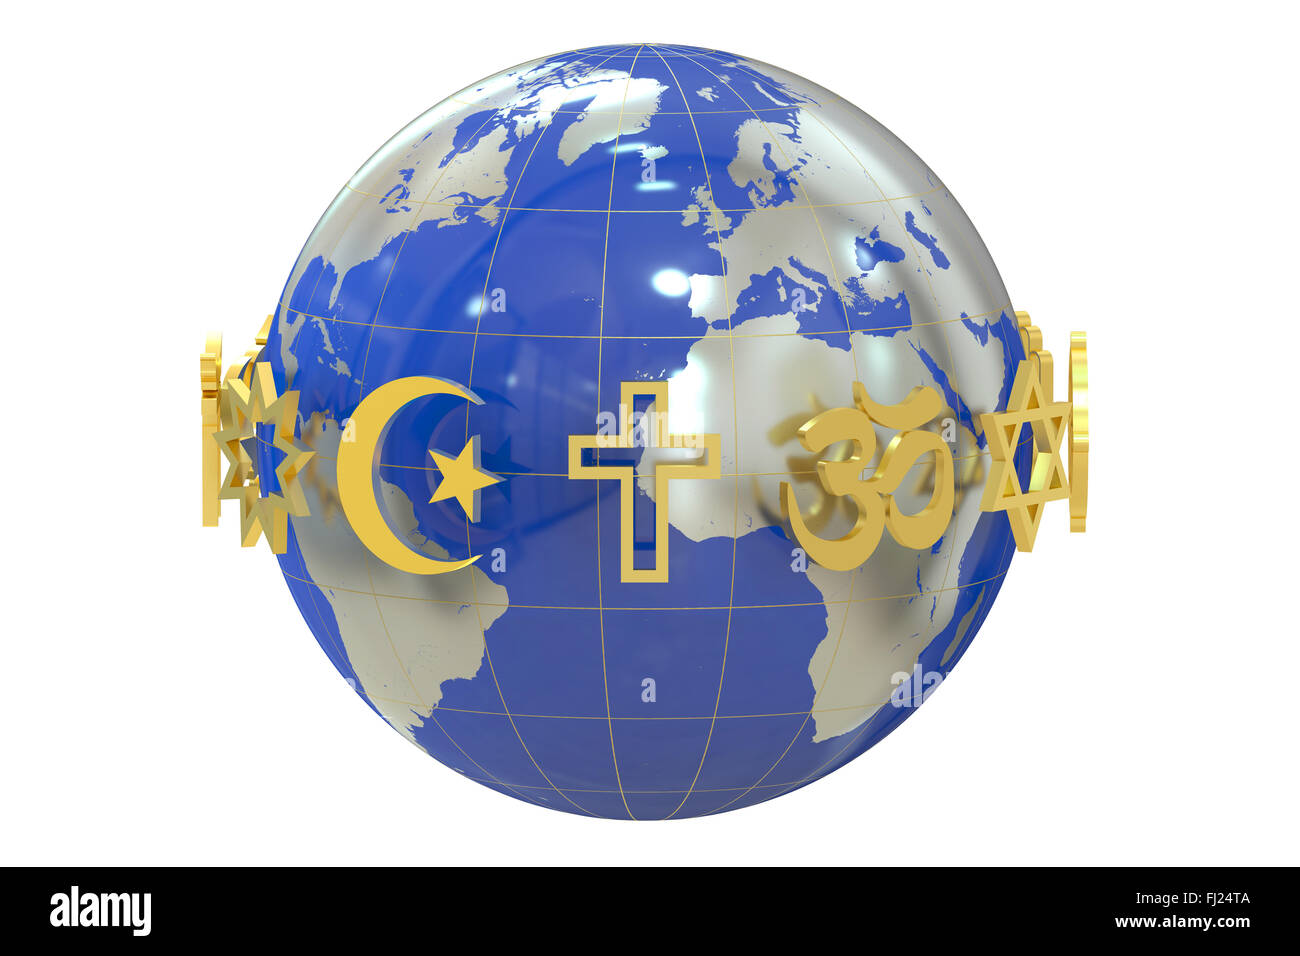 Globe with religions symbols  isolated on white background Stock Photo